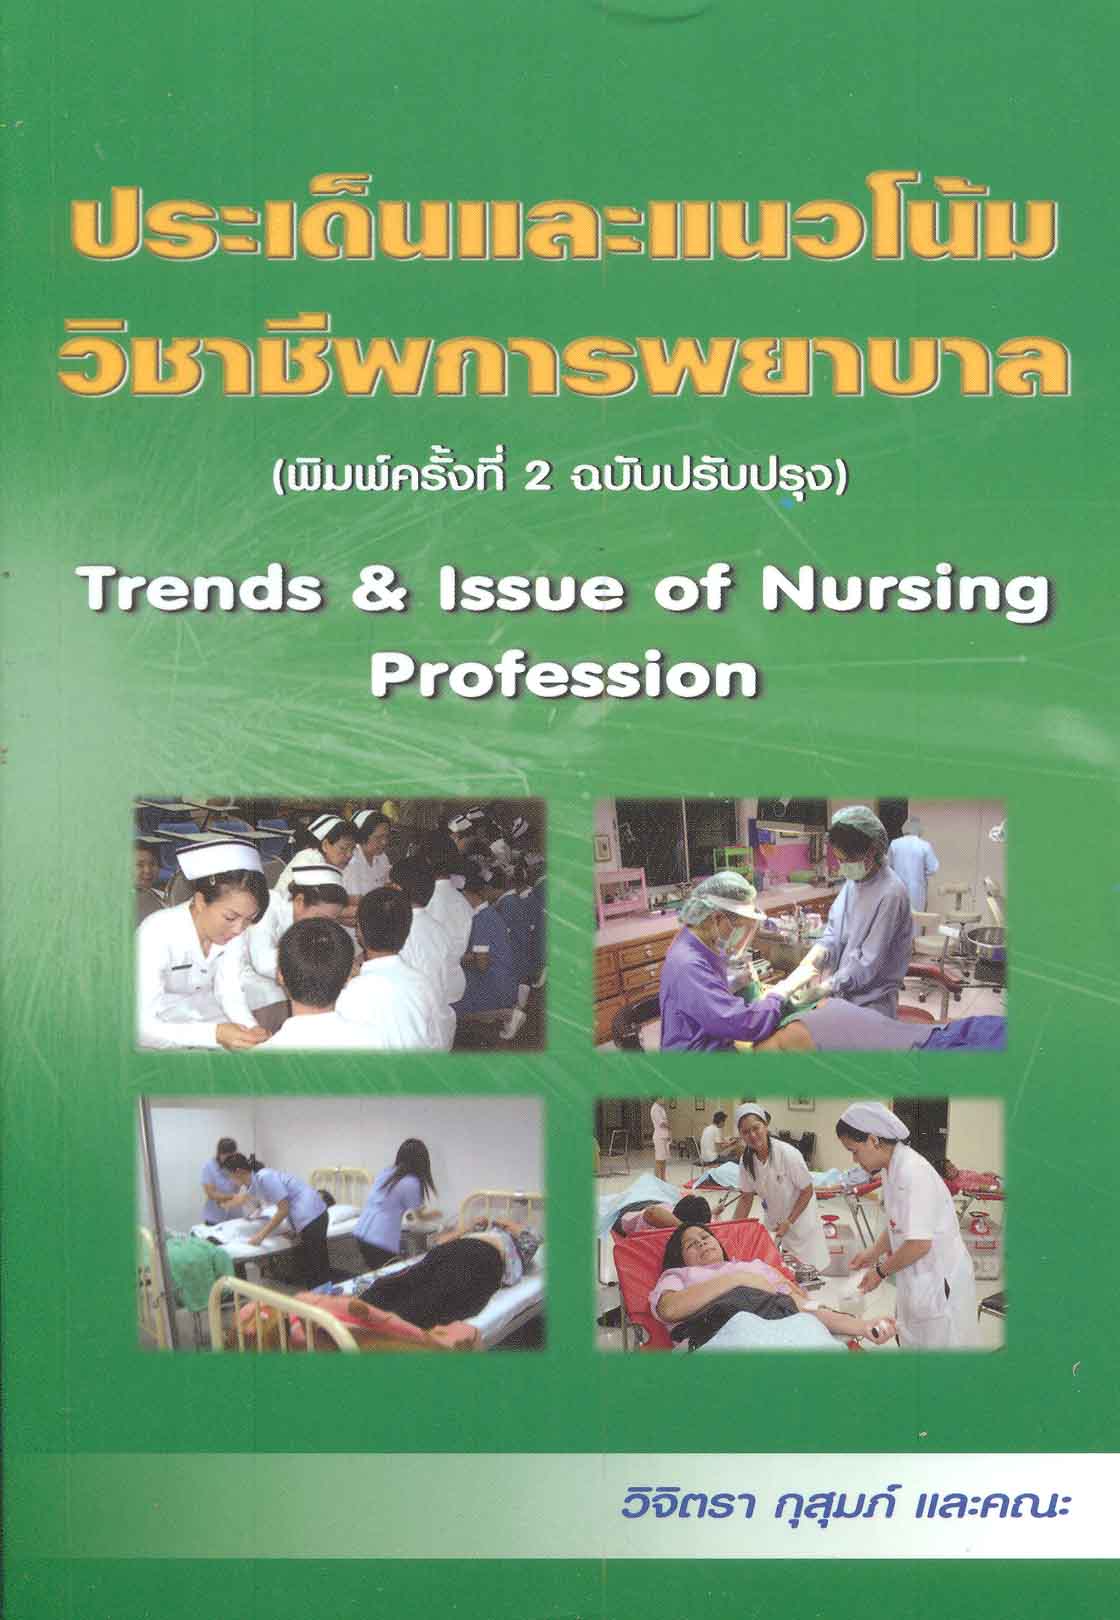 ประเด็นและแนวโน้มวิชาชีพการพยาบาล Trends & Issue of nursing profession